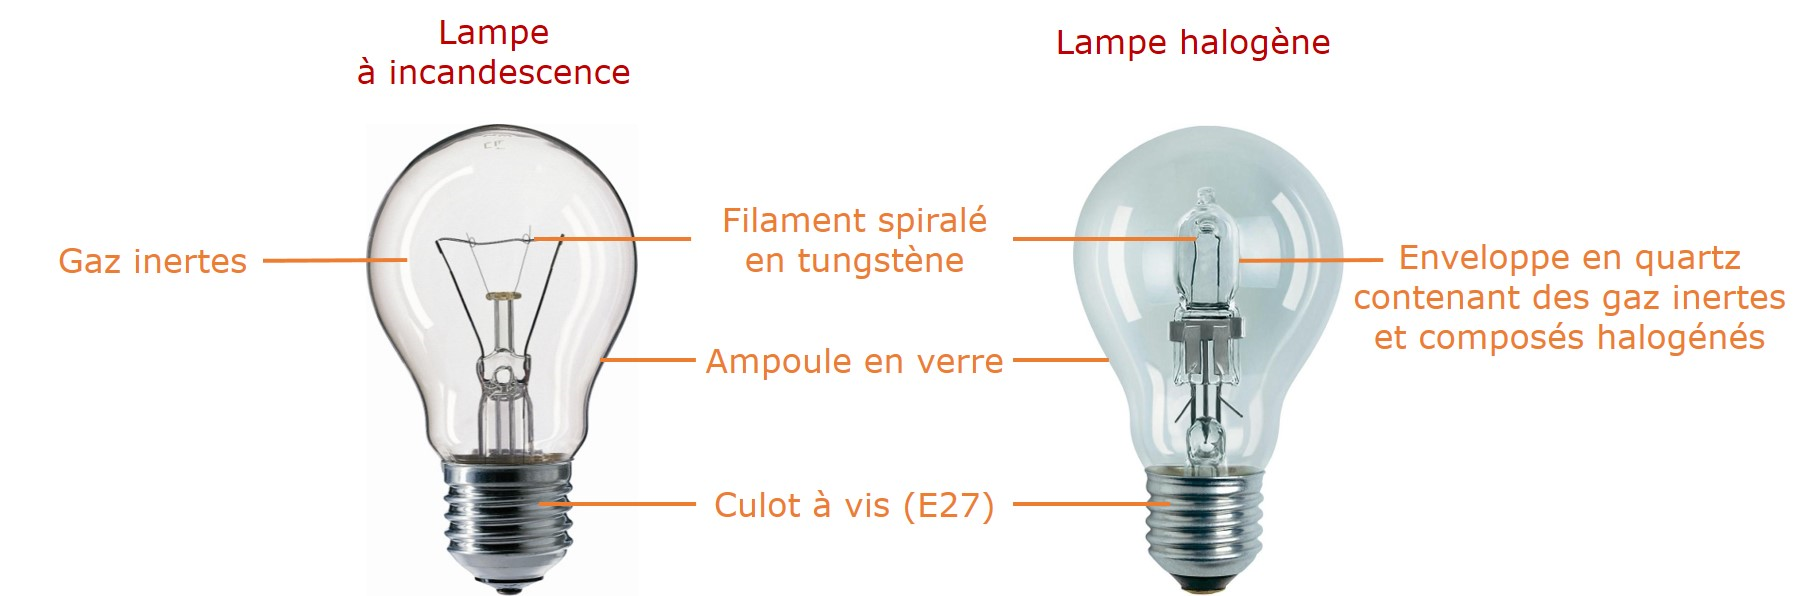 Lampe à incandescence, quel gaz pour le filament en tungstène ?